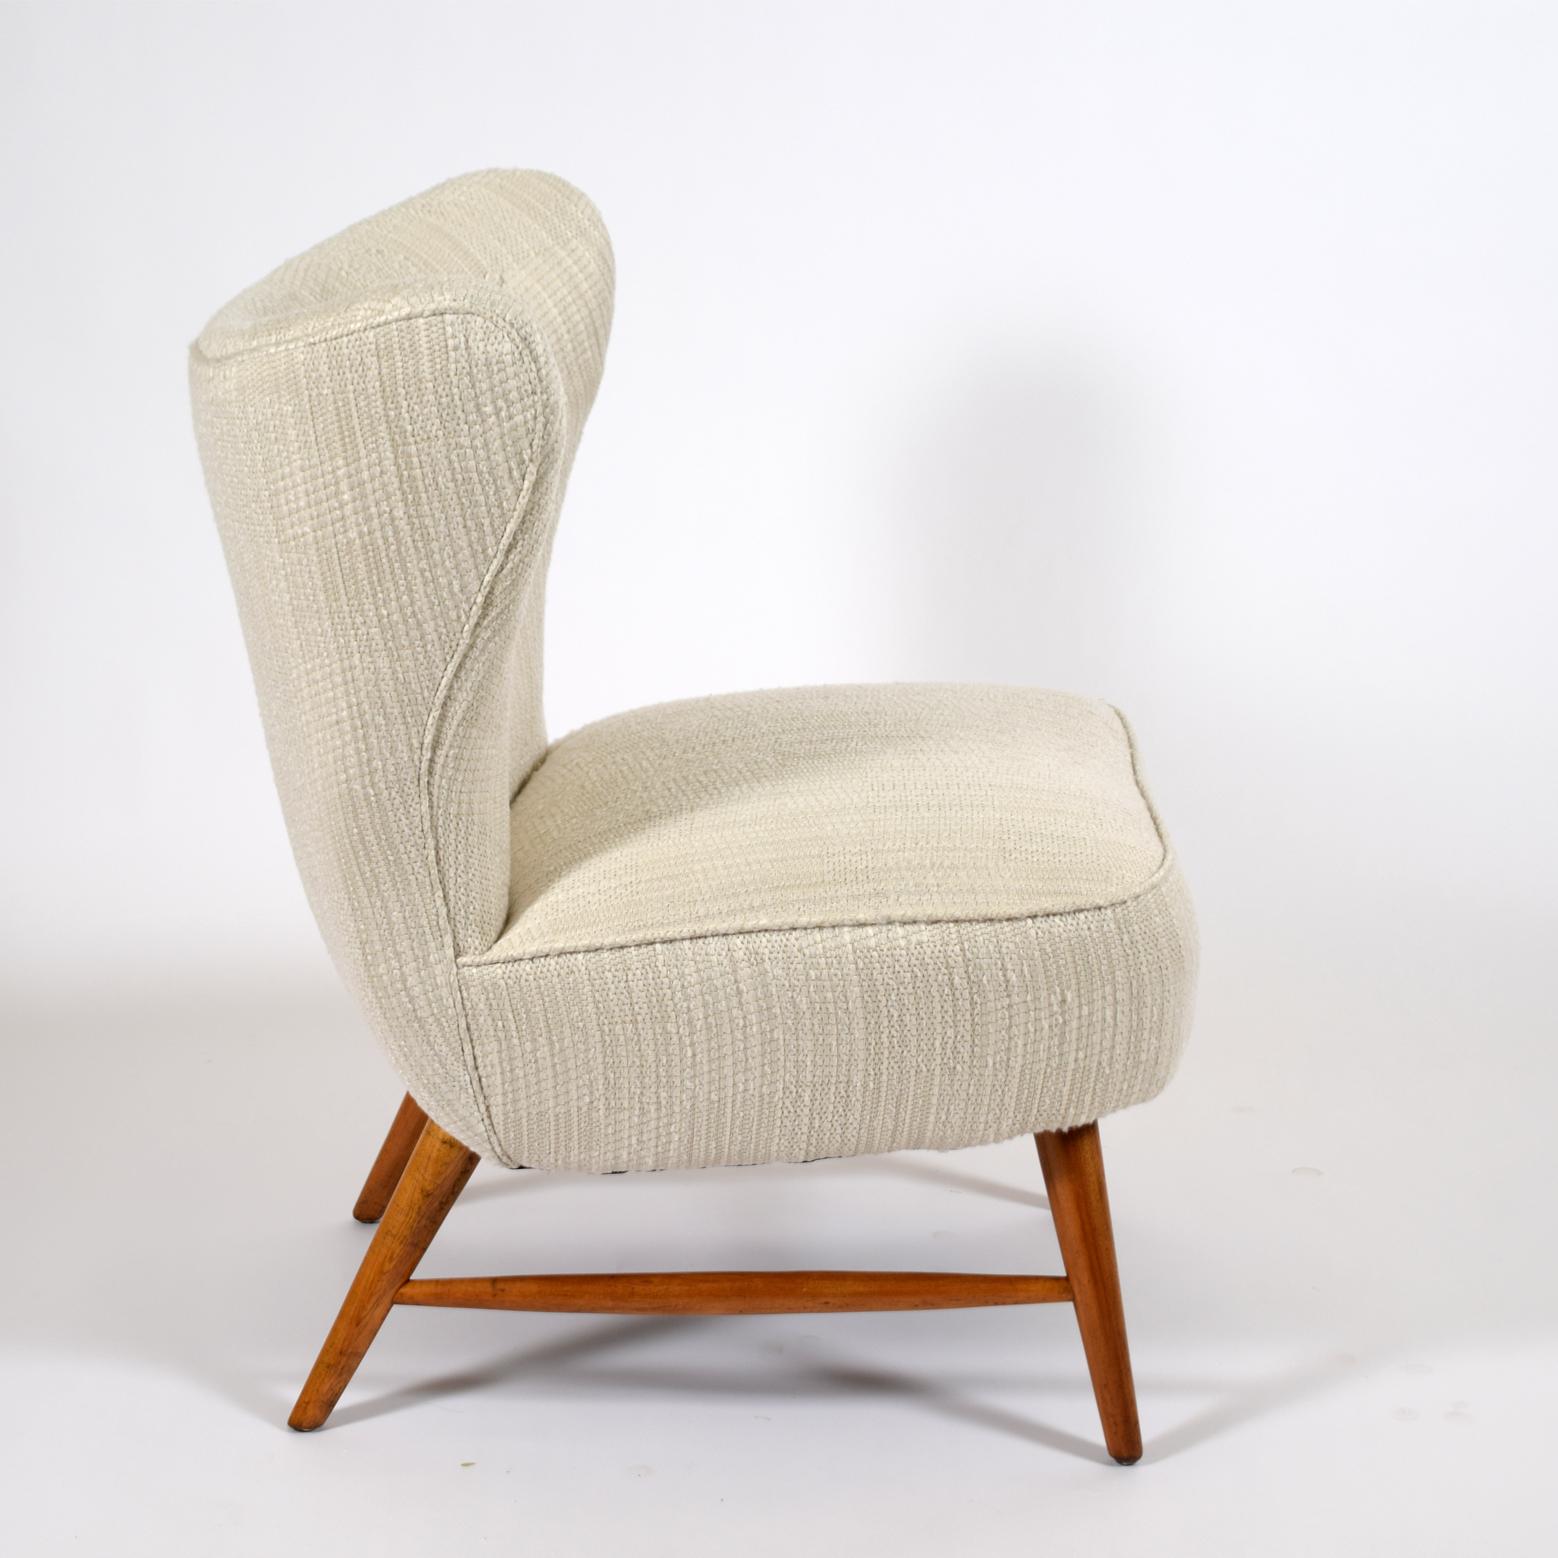 Seltener Stuhl mit gebogener Rückenlehne und Beinen aus Birke. Vertrieben von Knoll in den 1940er Jahren für ein paar Jahre. neue Polsterung von NK original Label restauriert neu gepolstert.